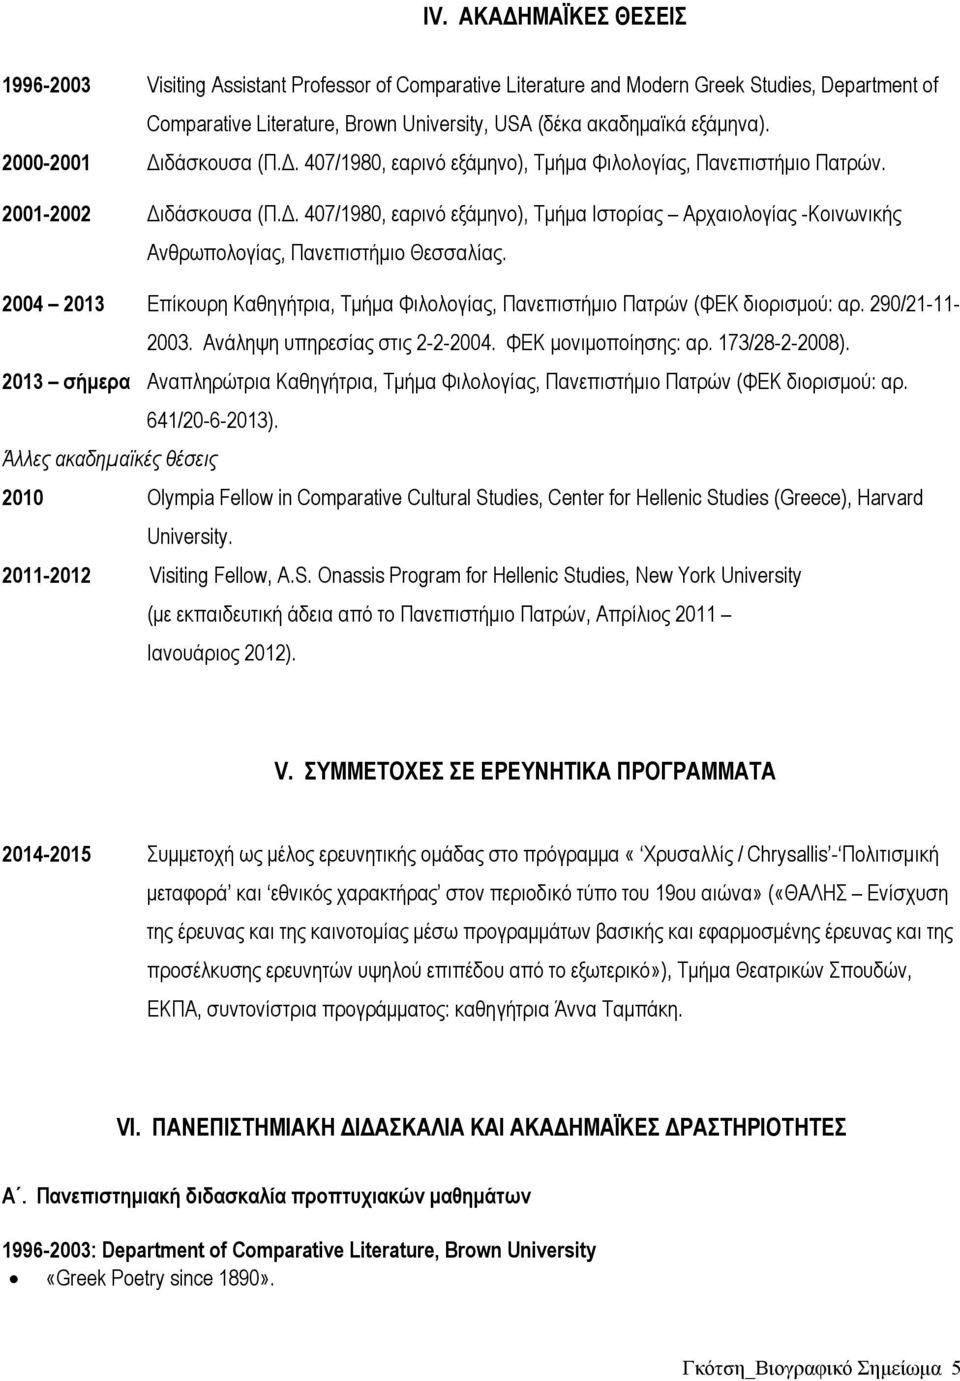 2004 2013 Επίκουρη Καθηγήτρια, Τμήμα Φιλολογίας, Πανεπιστήμιο Πατρών (ΦΕΚ διορισμού: αρ. 290/21-11- 2003. Ανάληψη υπηρεσίας στις 2-2-2004. ΦΕΚ μονιμοποίησης: αρ. 173/28-2-2008).